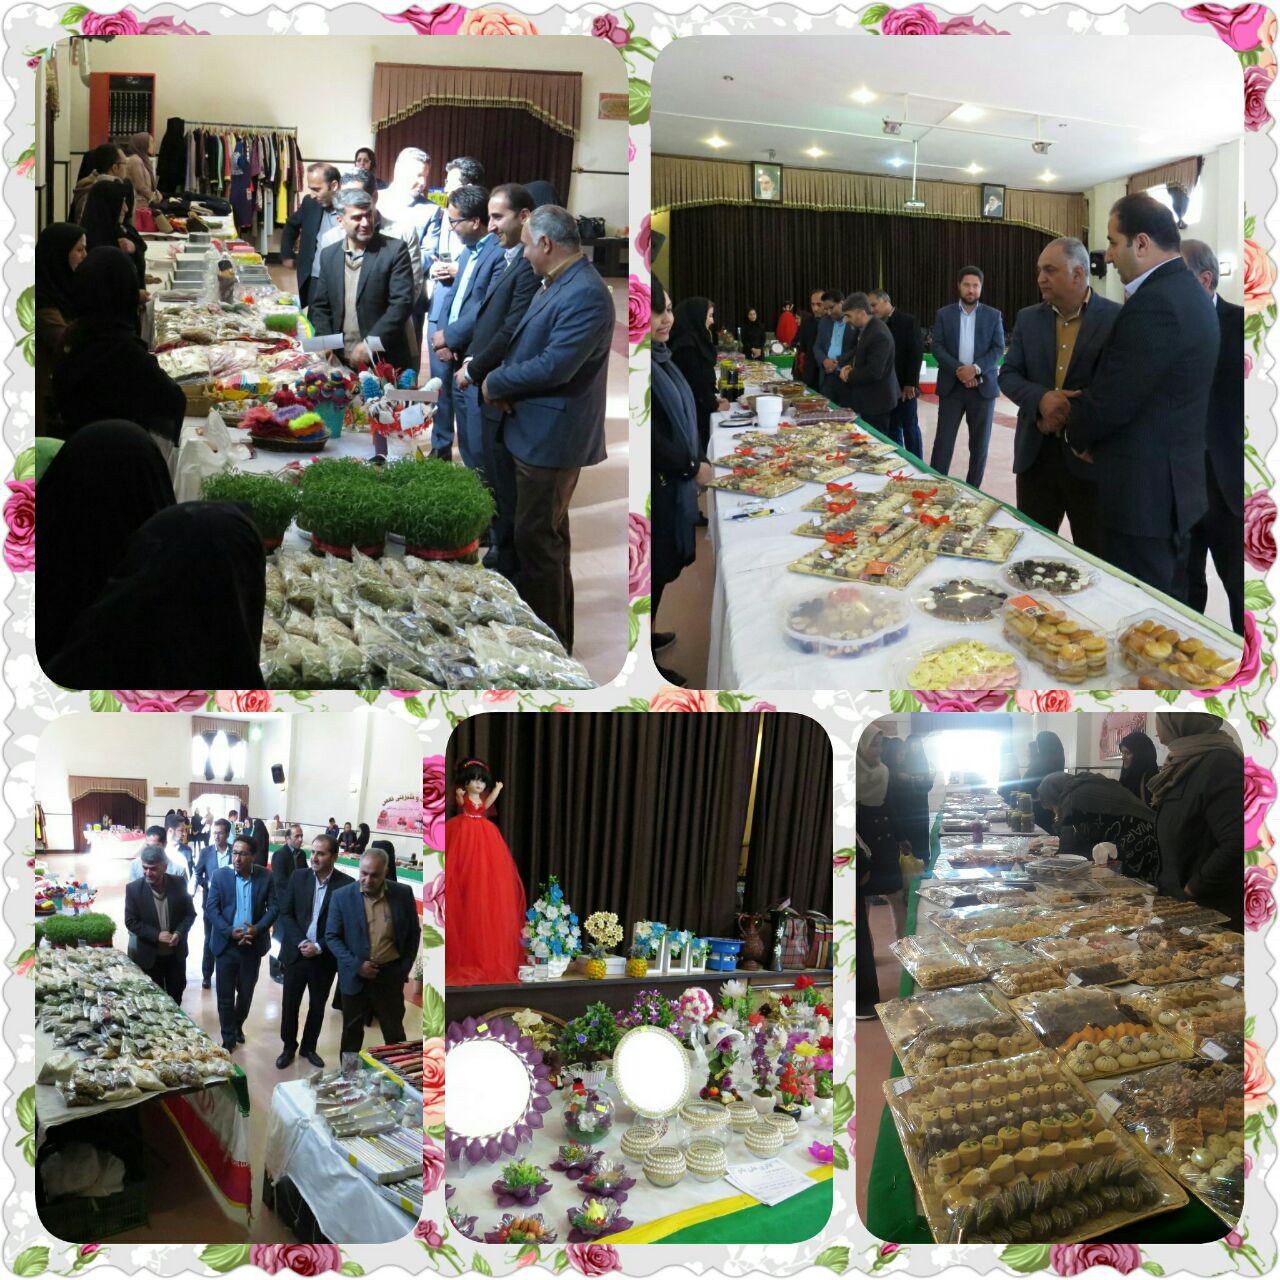 نمایشگاه وفروشگاه نوروز محصولات خوراکی خانگی وصنایع دستی  درسالن شهرداری به مدت 3 روز  @alavijehsalam